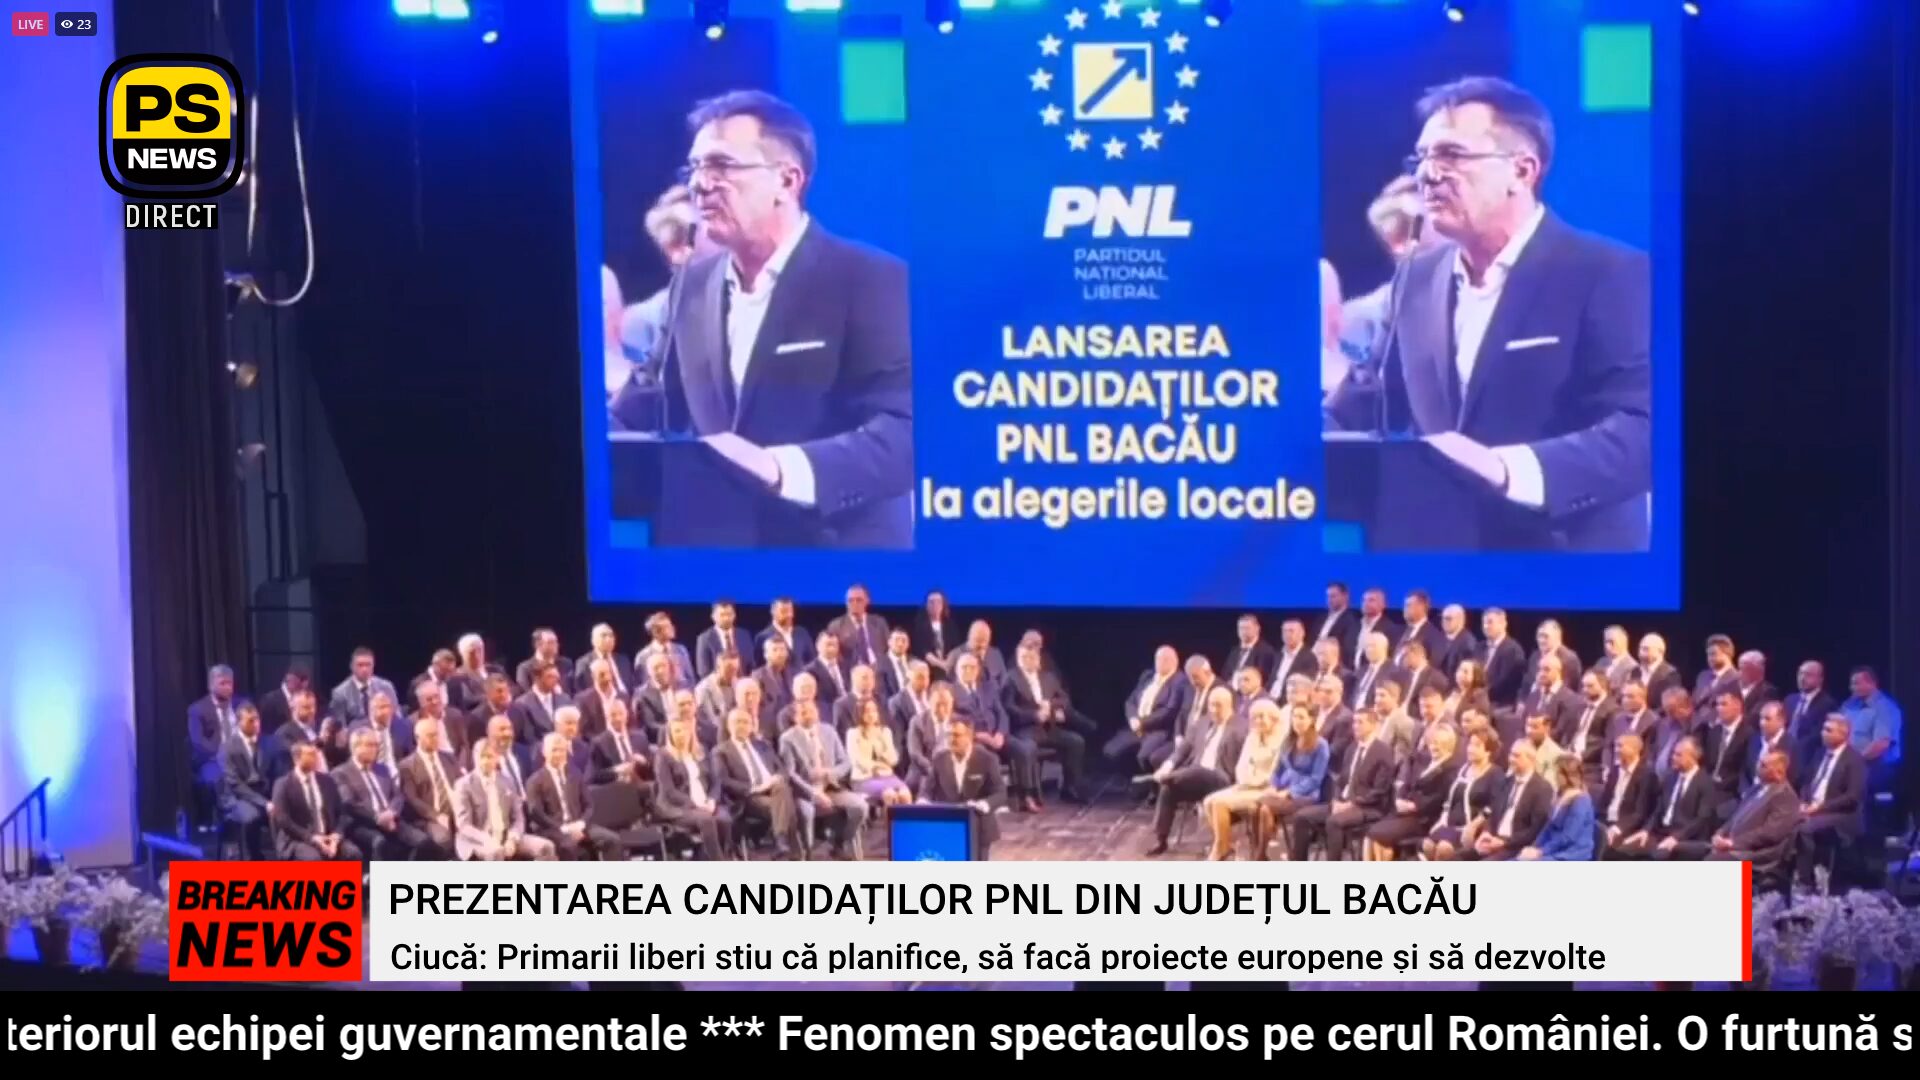 PS News TV | Prezentarea candidaților PNL din județul Bacău